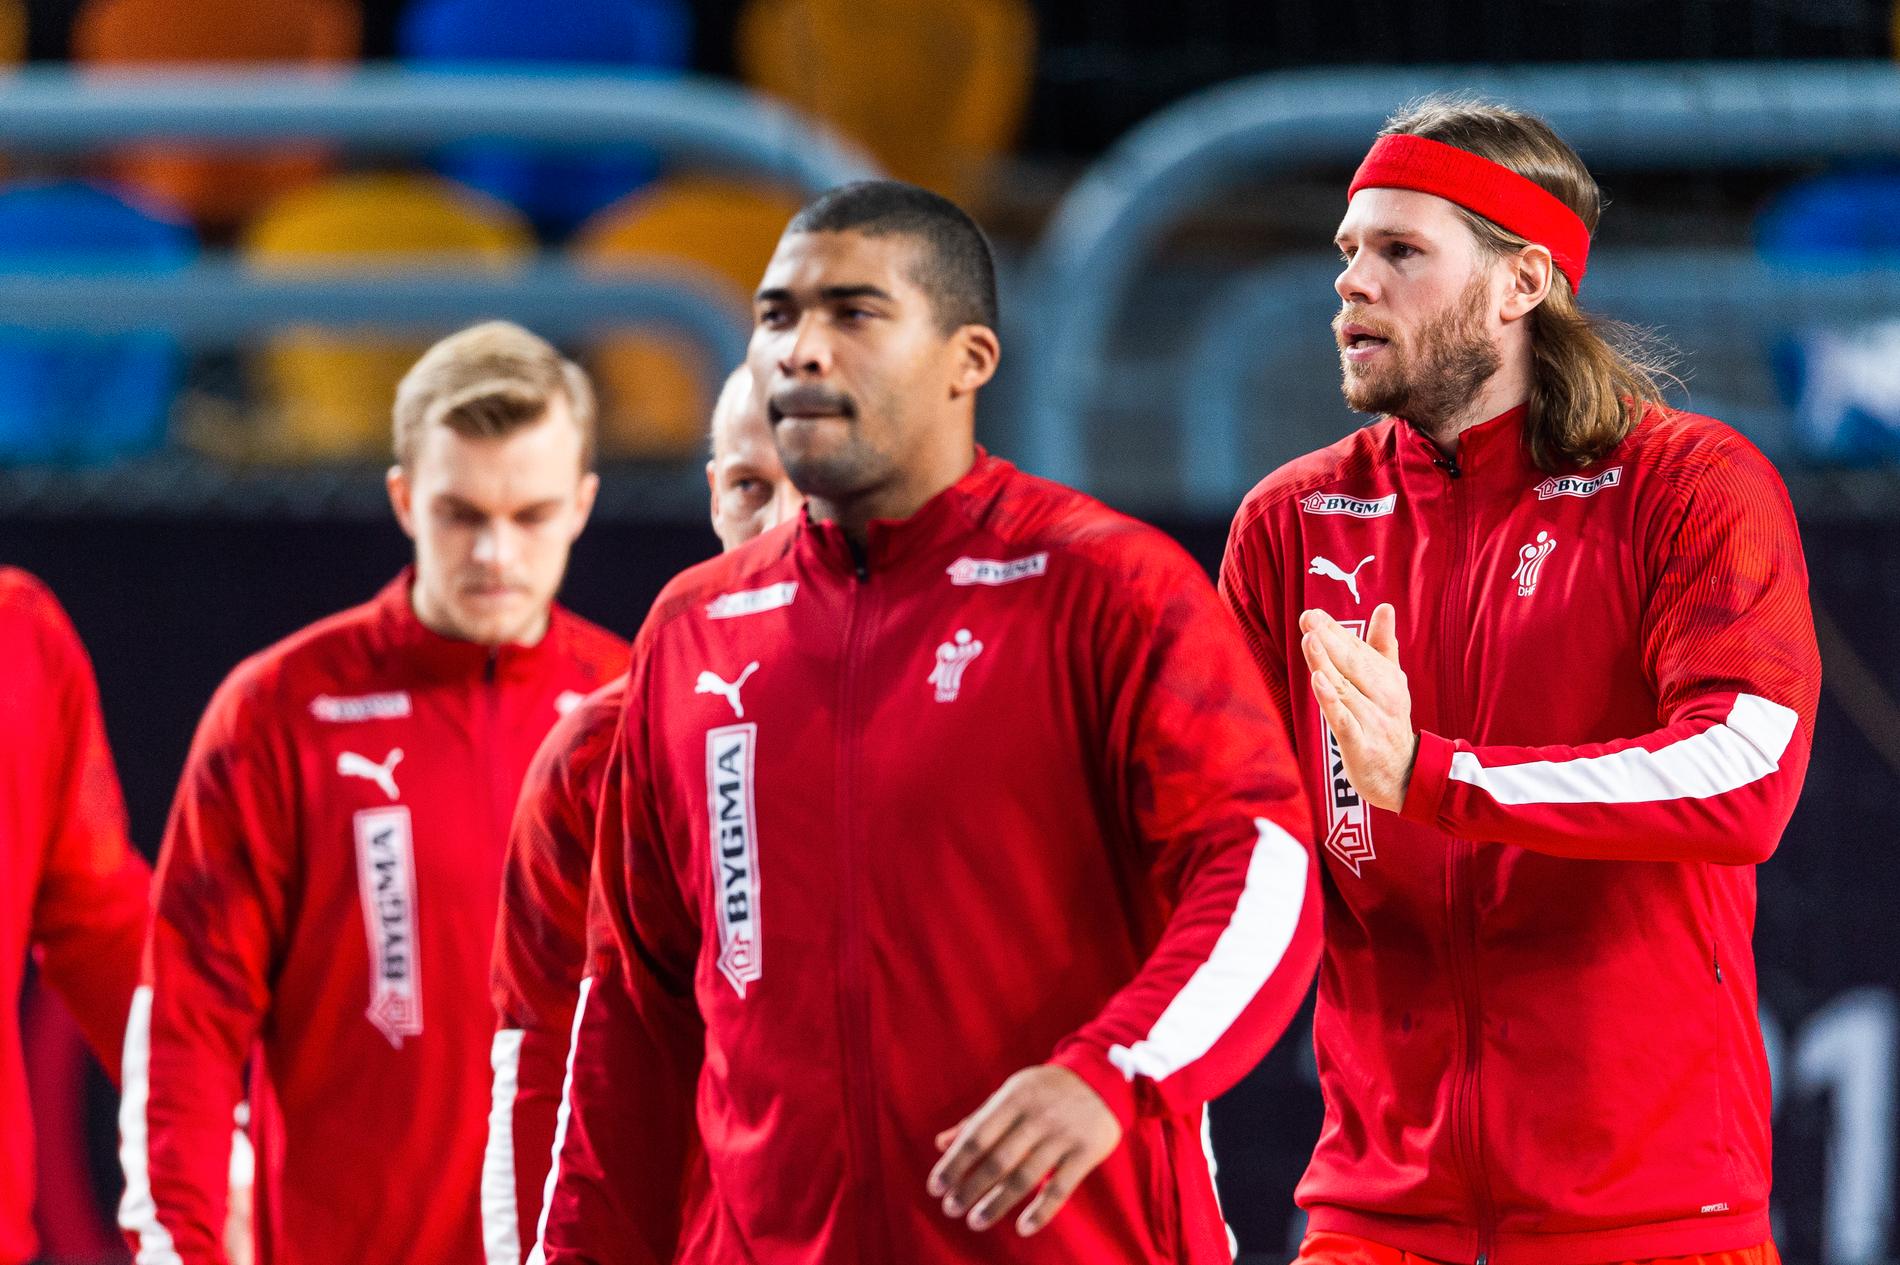 Danska landslaget har via landslagschefen Morten Henriksen gått ut i försvar för Egypten. 